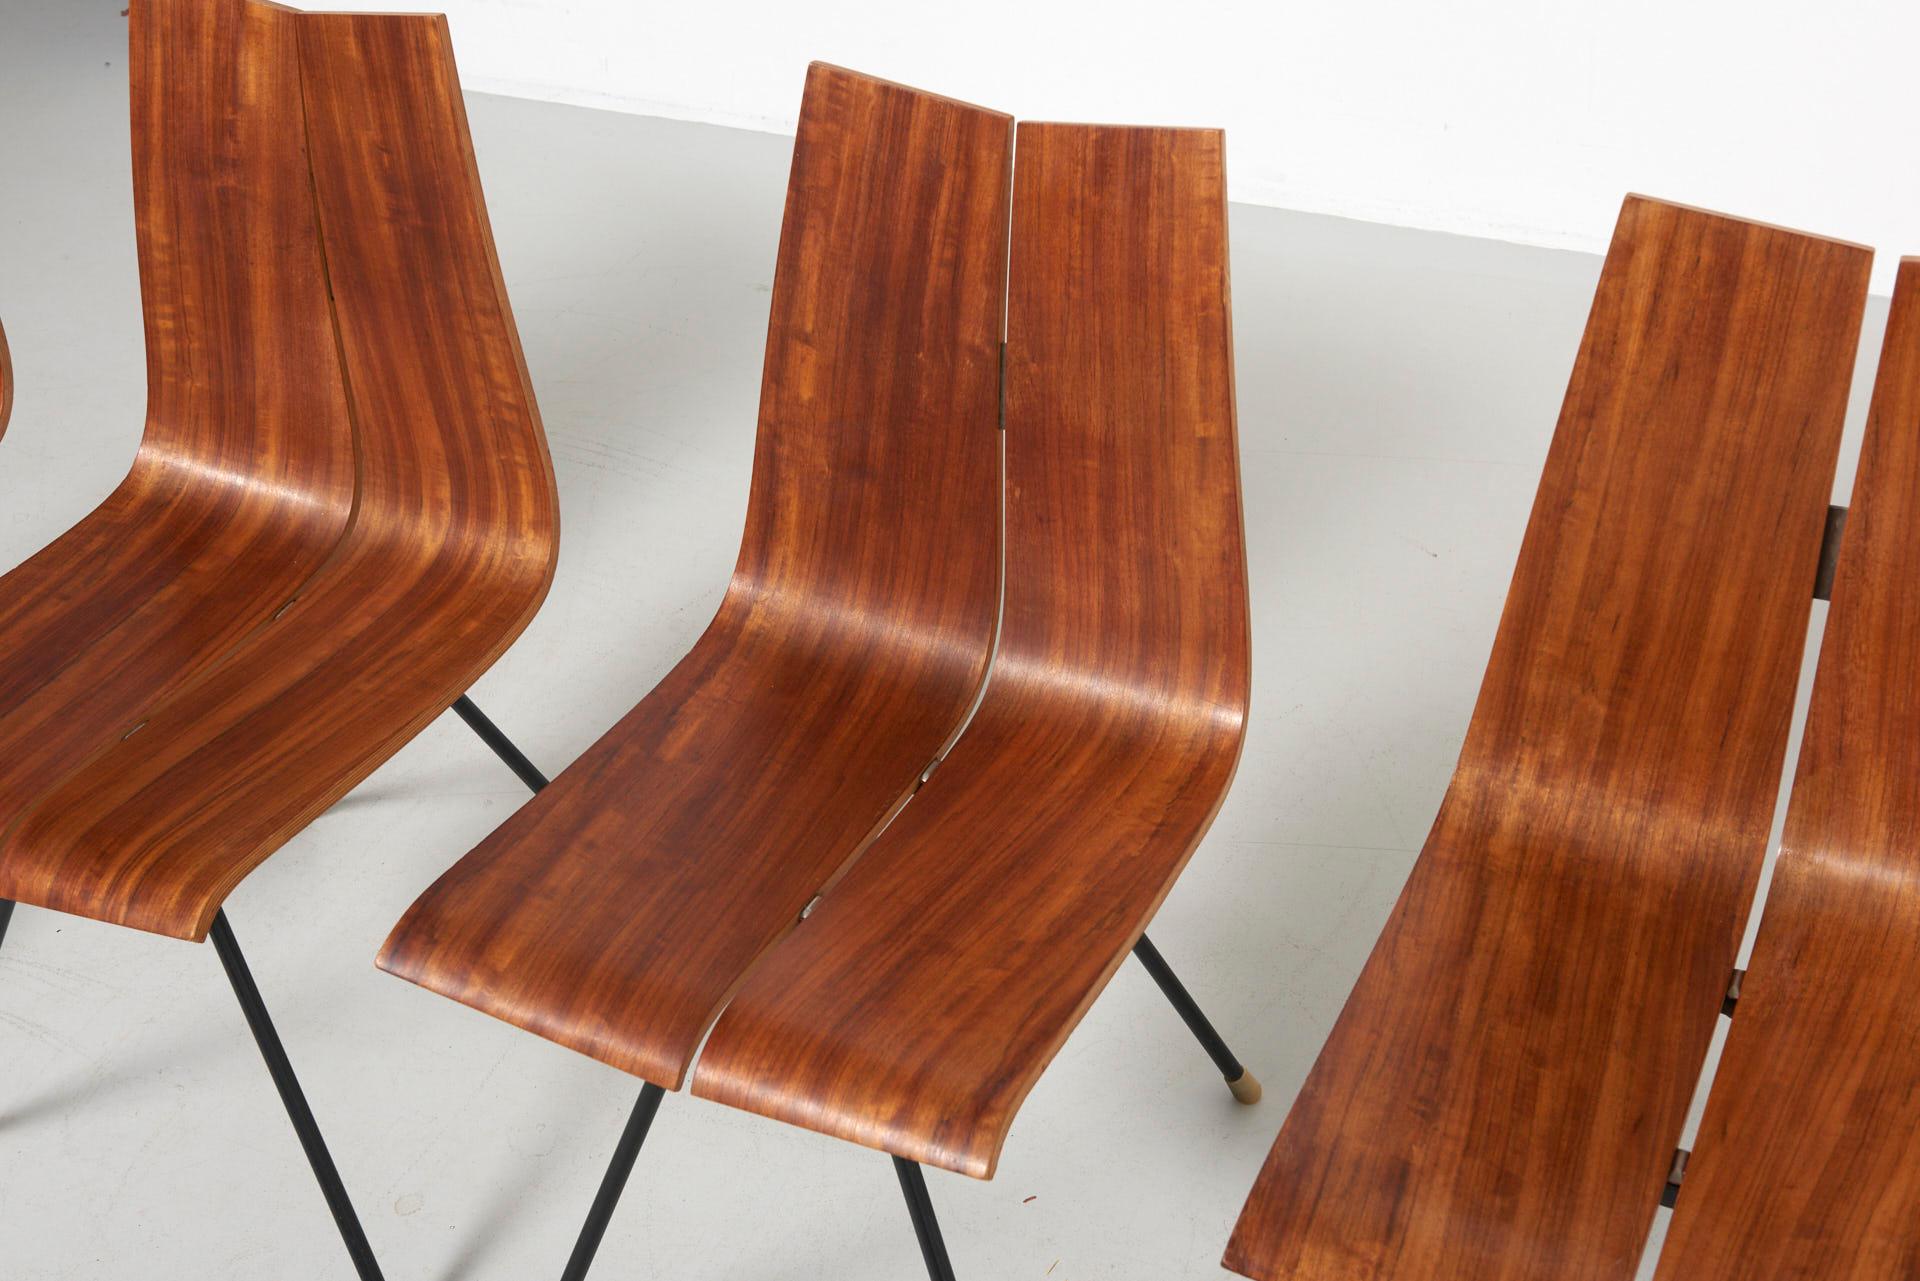 Steel 4 'GA' Chairs by Hans Bellmann in 1955, Made by Horgen Glarus in Switzerland